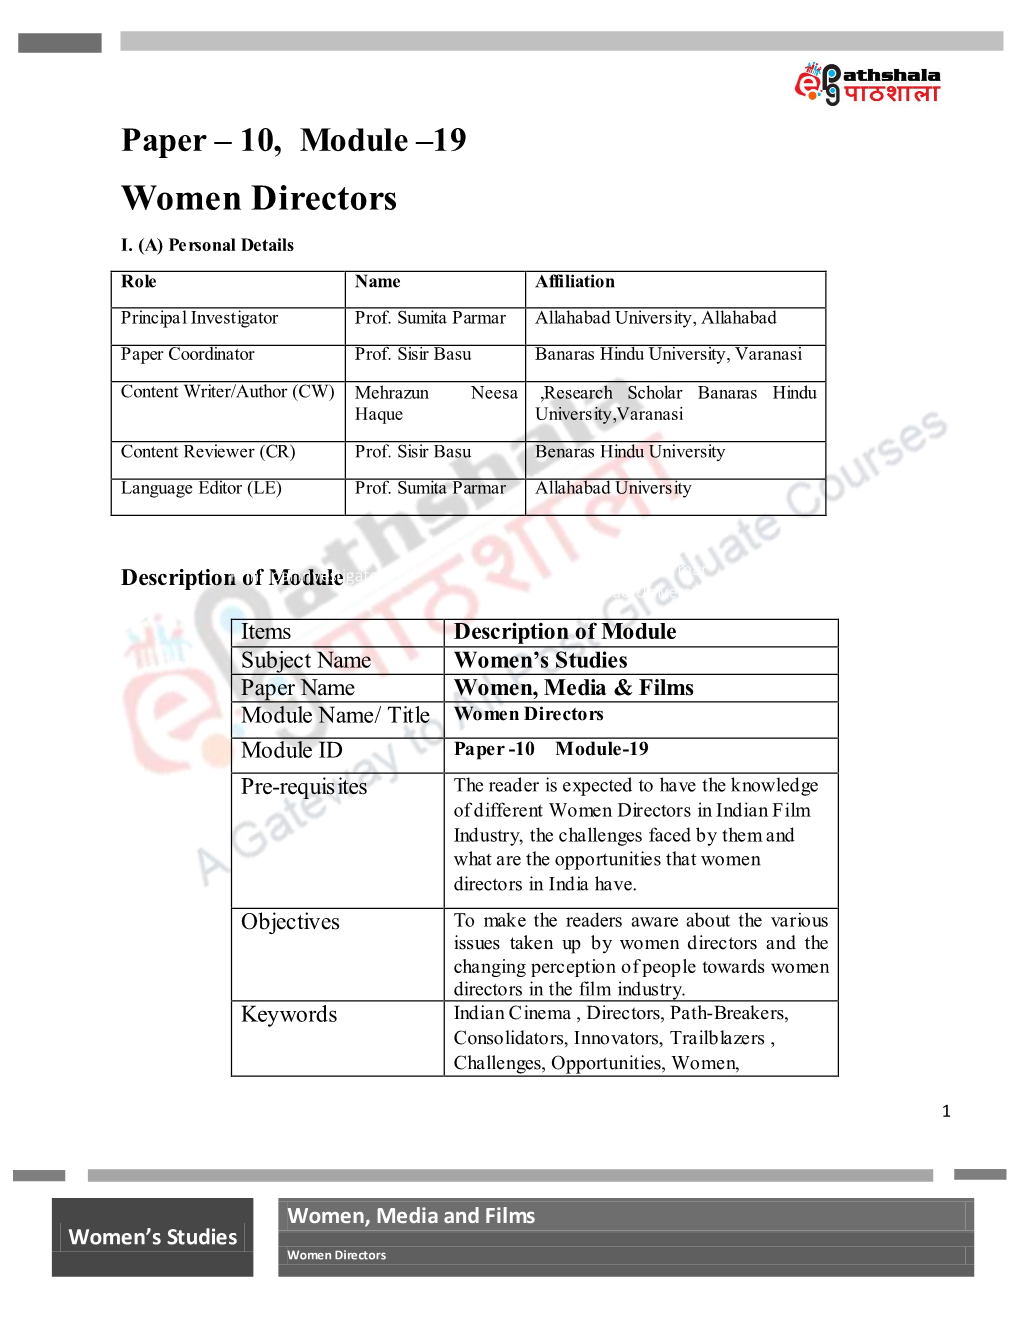 Women Directors I